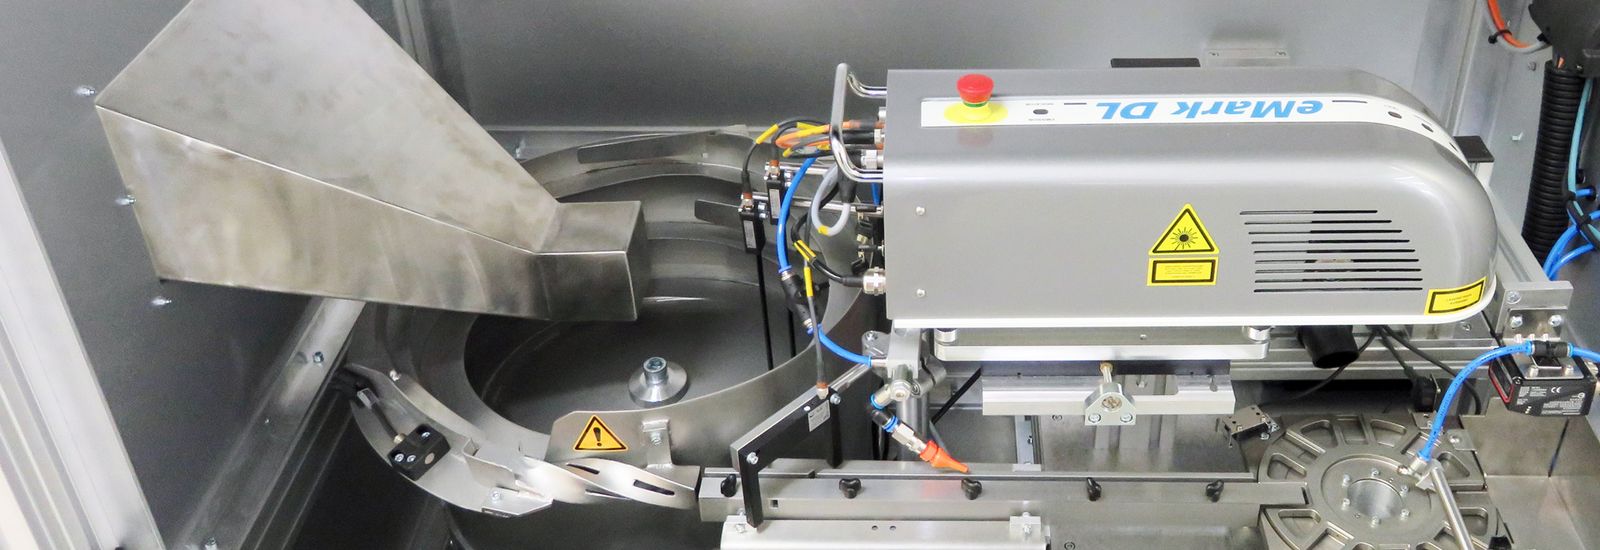 Laserkabine zur Produktkennzeichnung